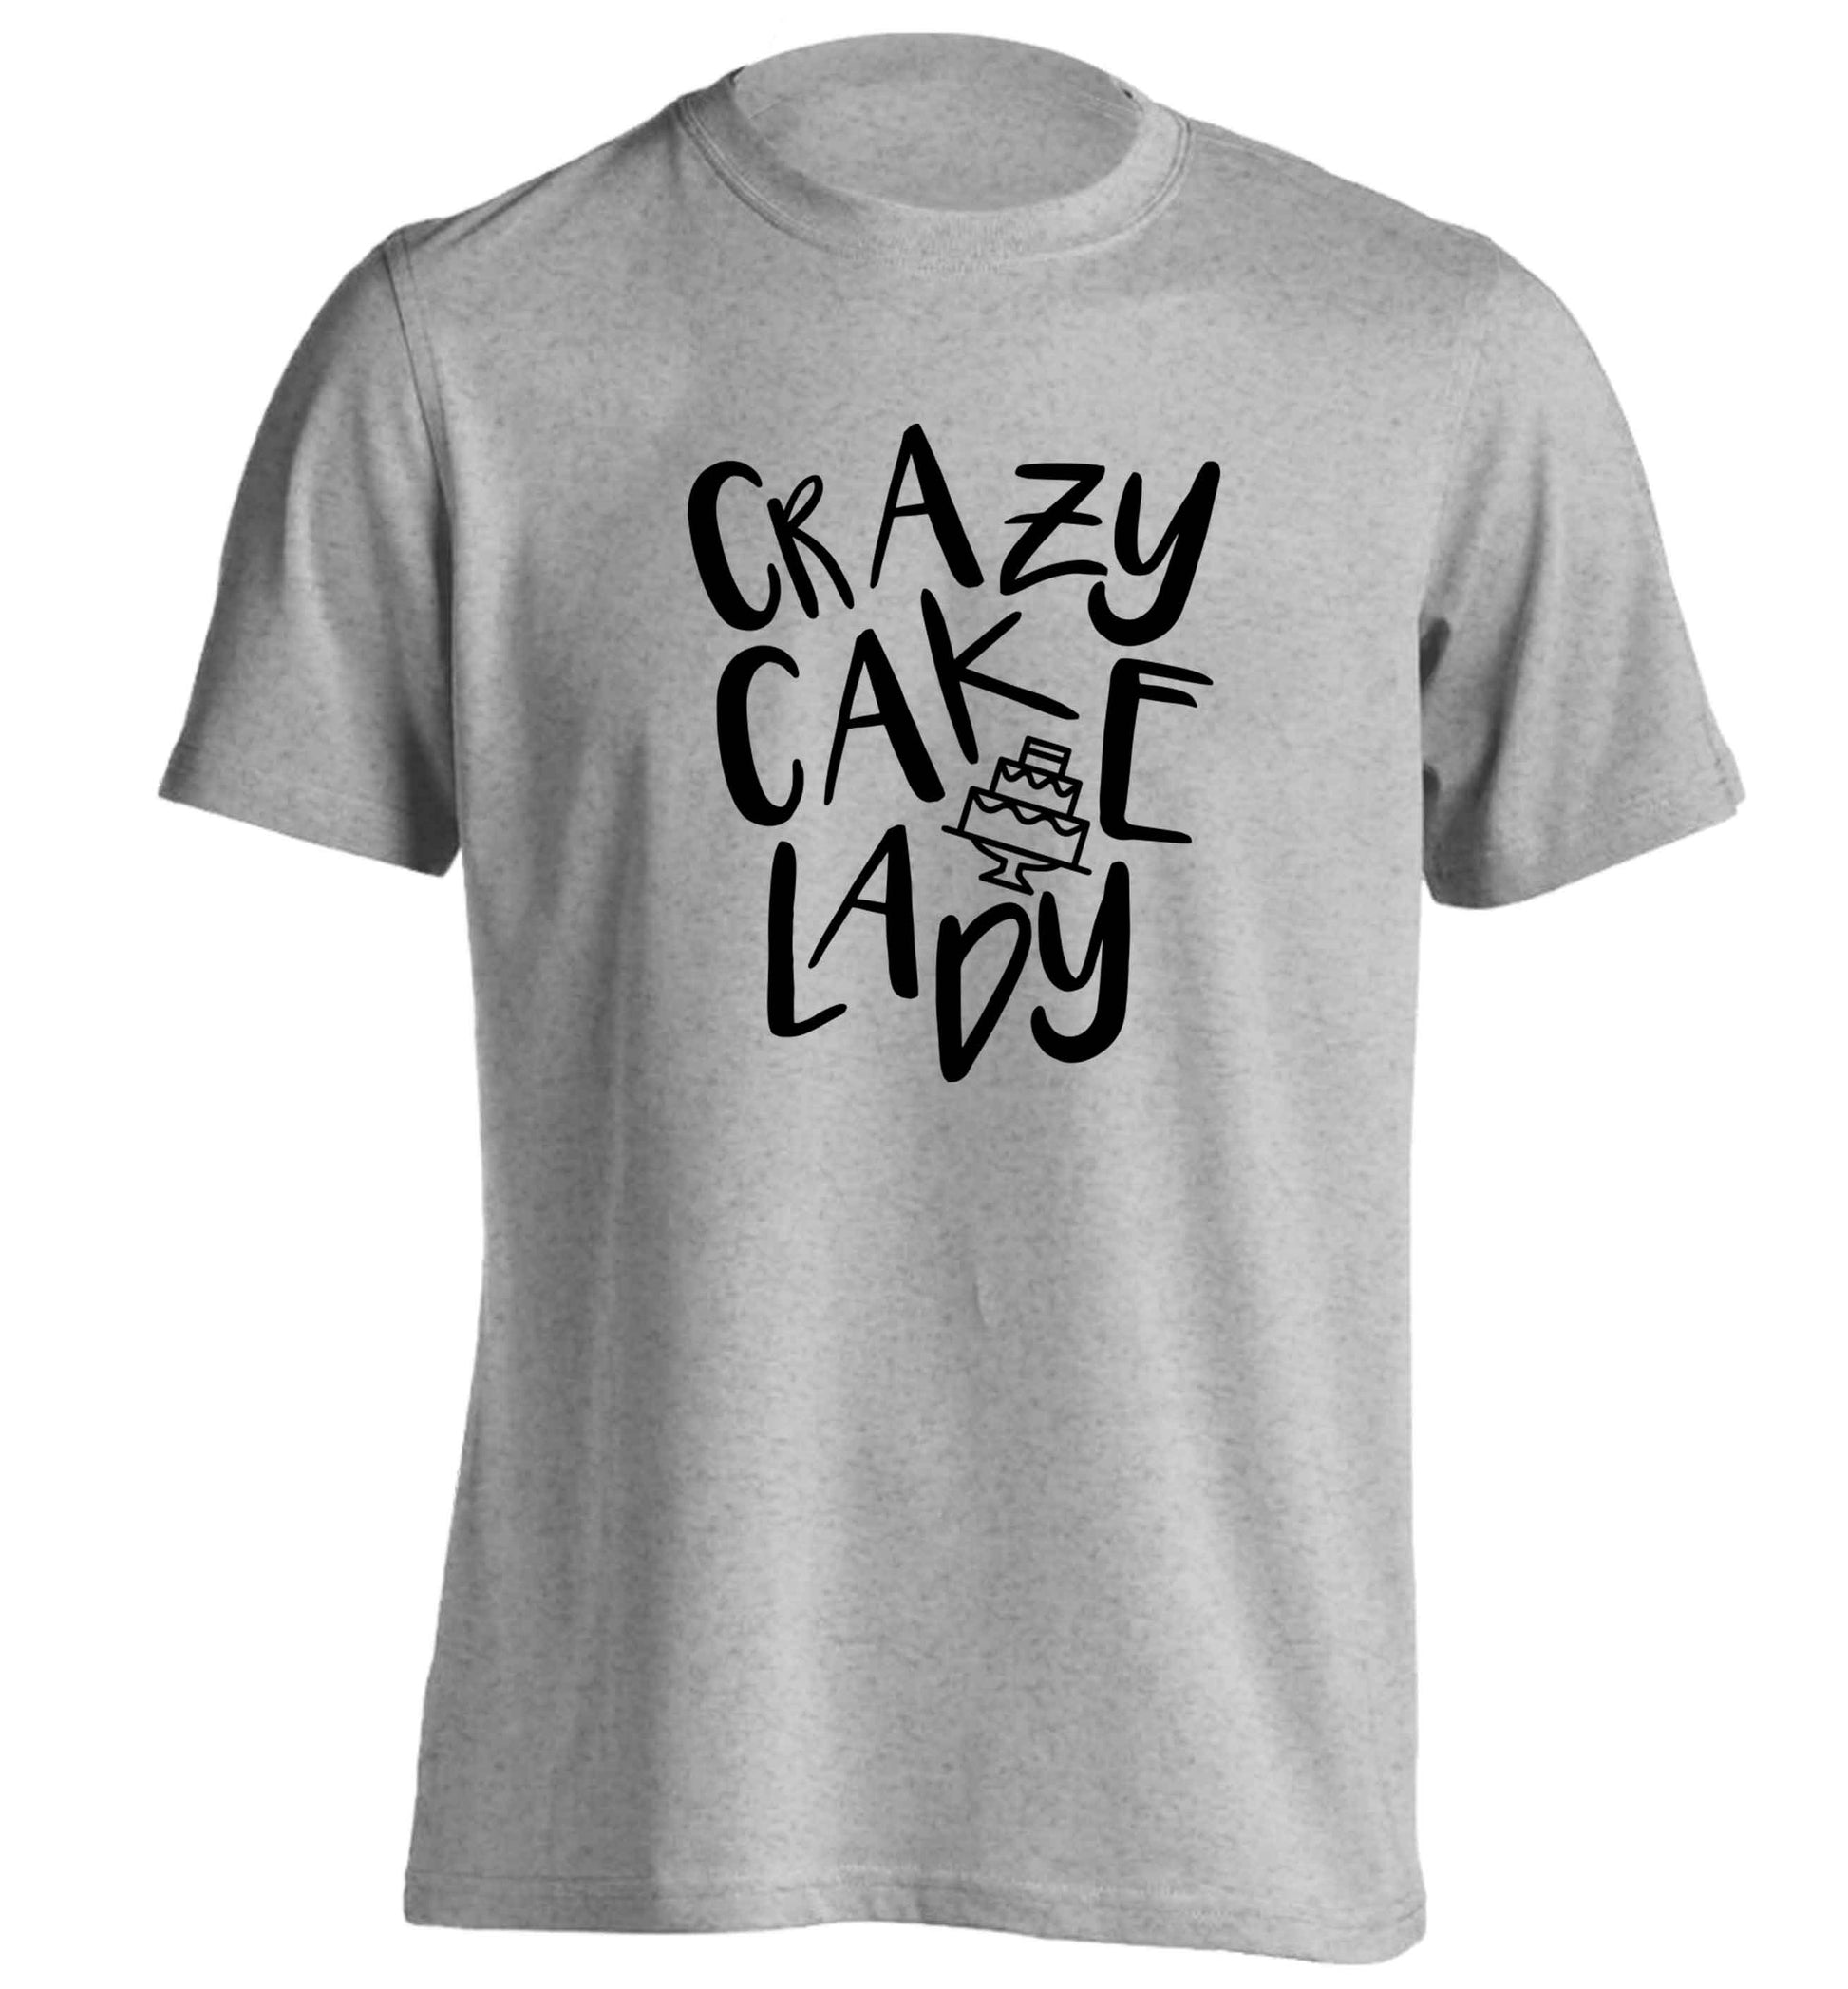 Crazy cake lady adults unisex grey Tshirt 2XL